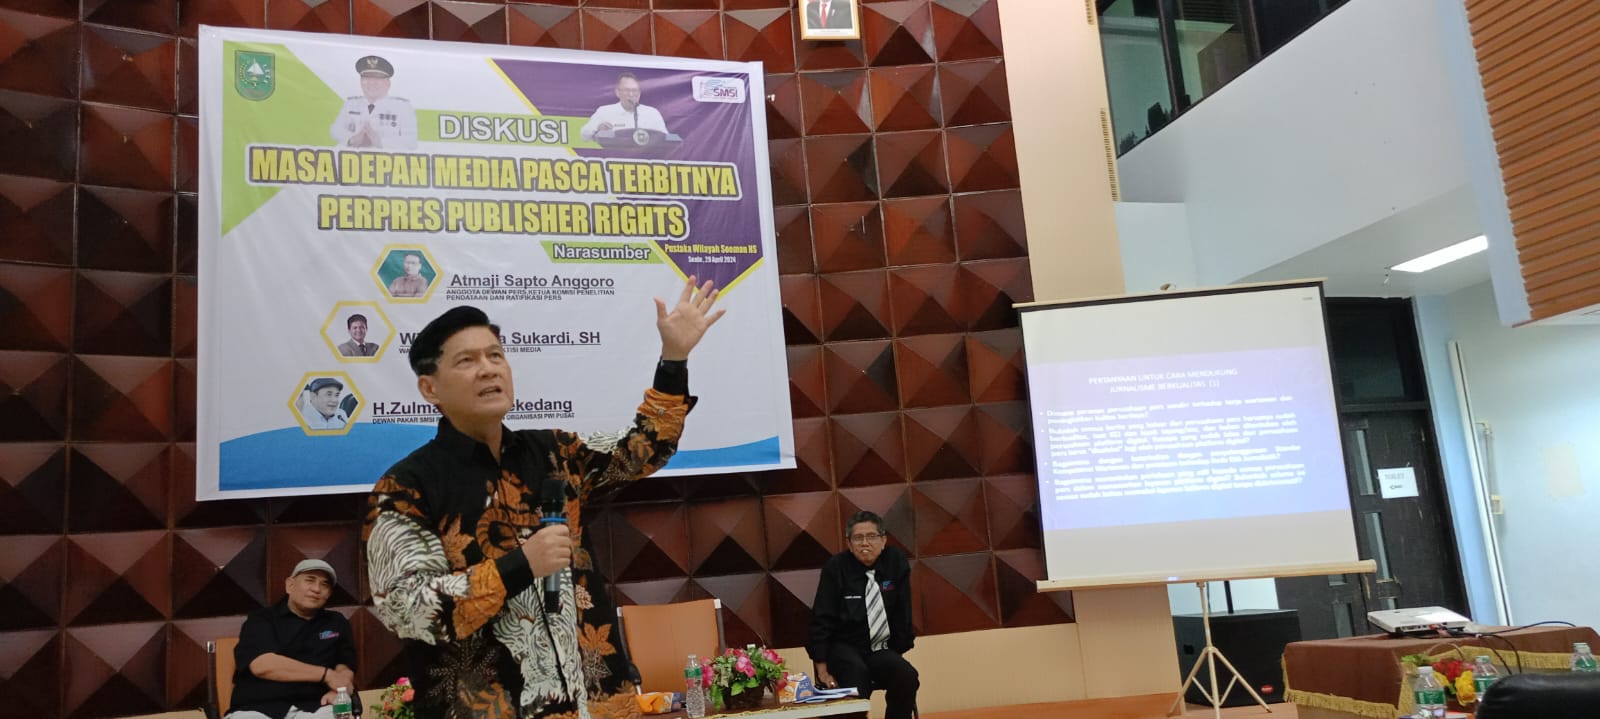 Perpres Publisher Rights Blunder, Wina Armada: Karpet Merah Menuju Belenggu Pers indonesia